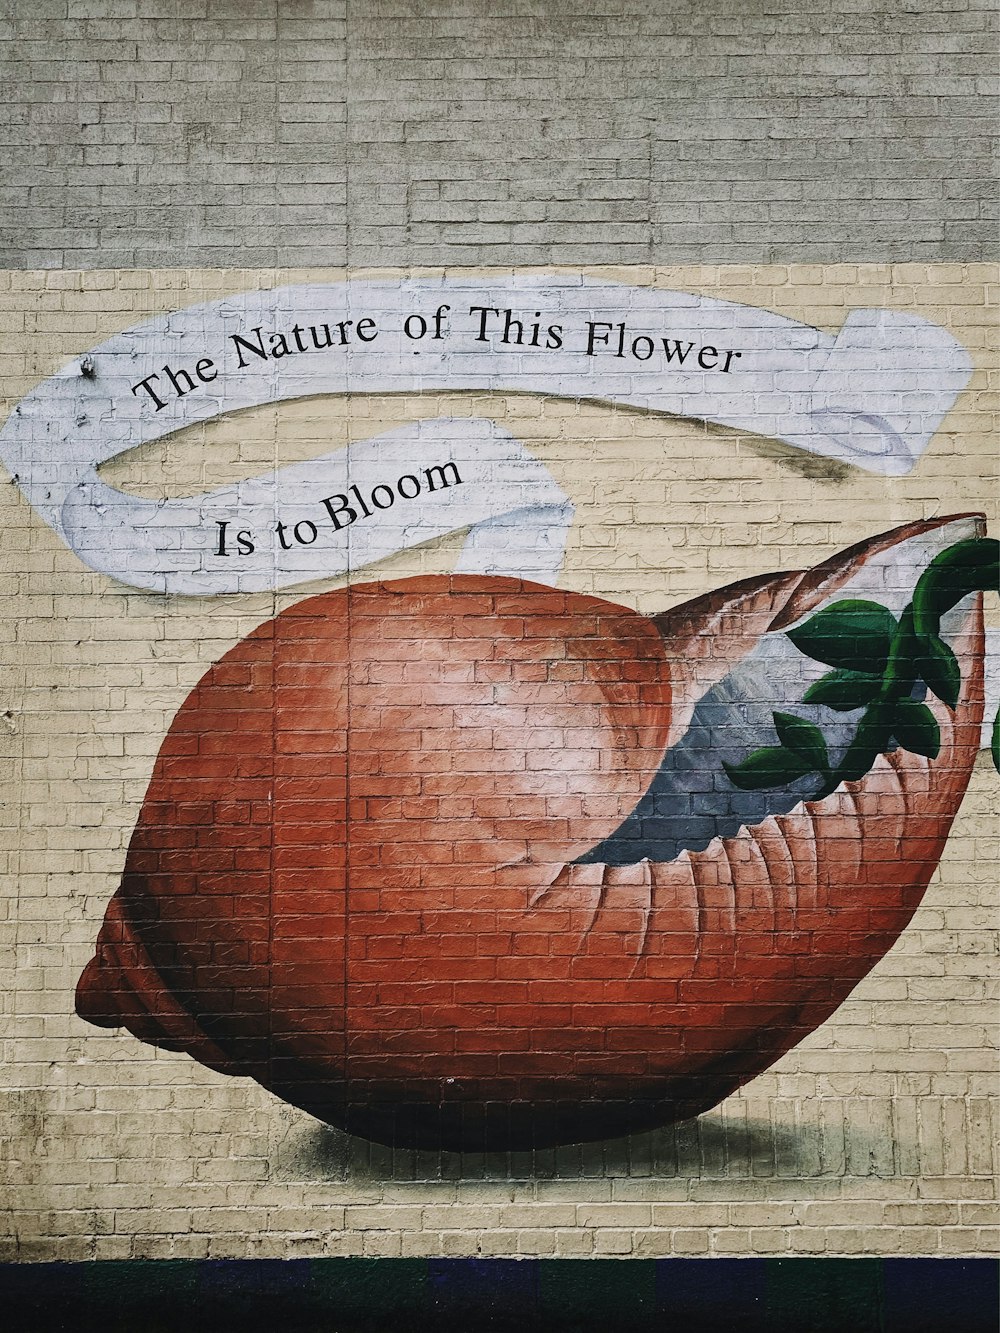 La nature de cette fleur est de faire fleurir des graffitis